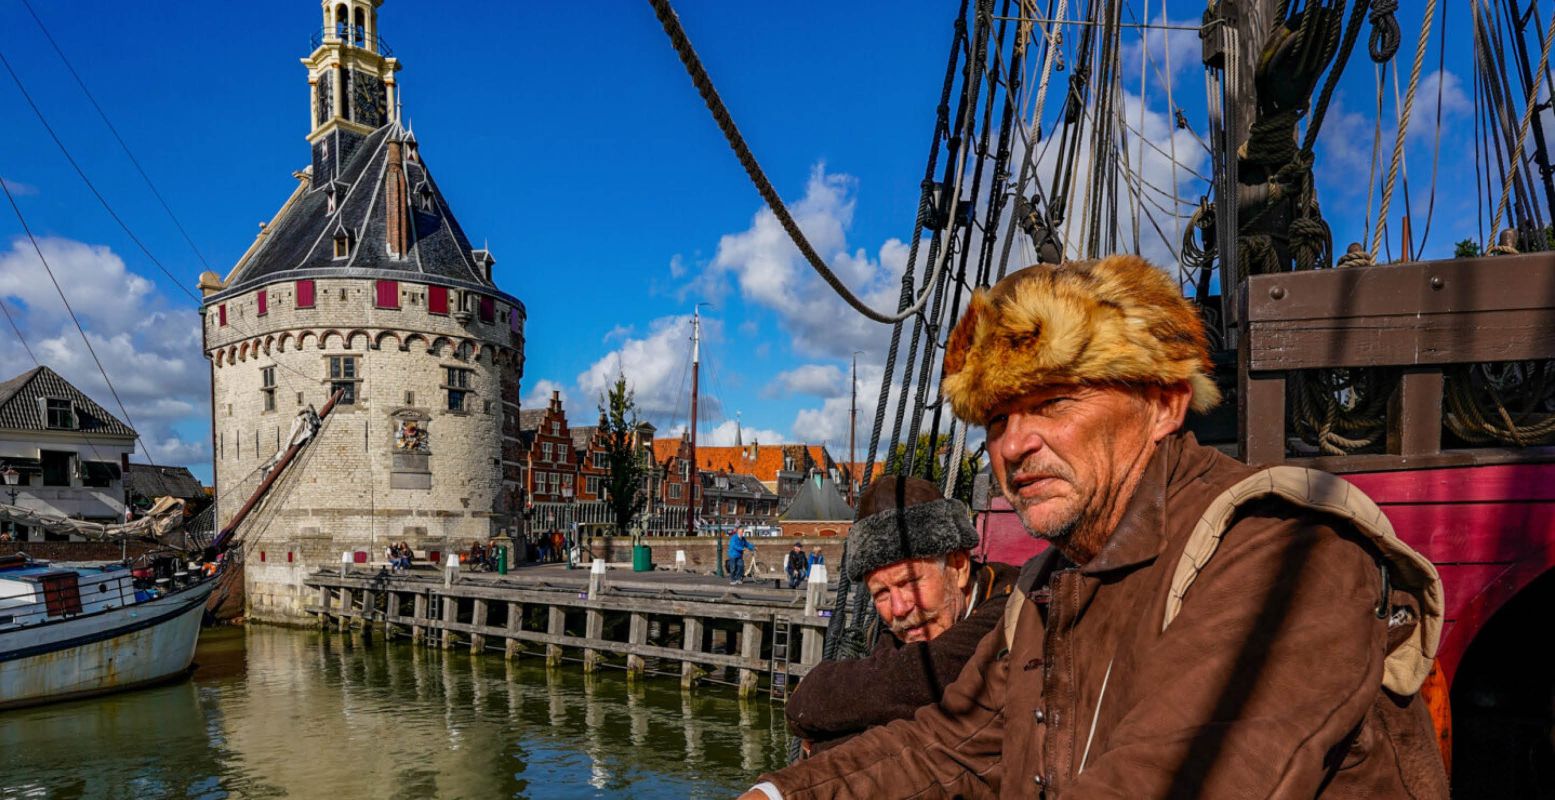 Stap aan boord van een schip en verken de haven van Hoorn. Foto: Benno Ellerbroek